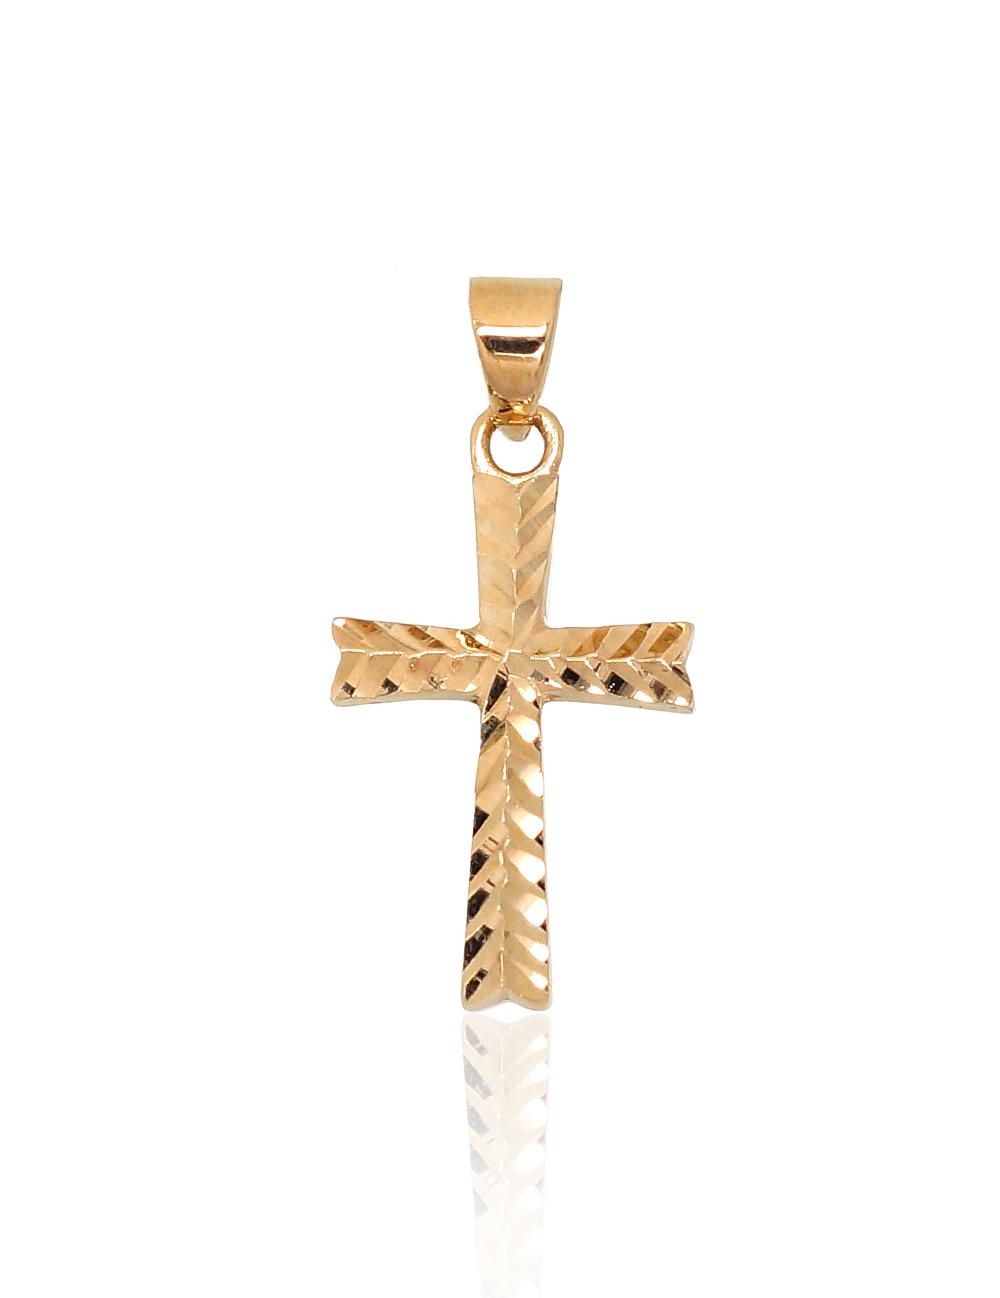 LV GOLD NECKLACE – Uniqua Jewelry